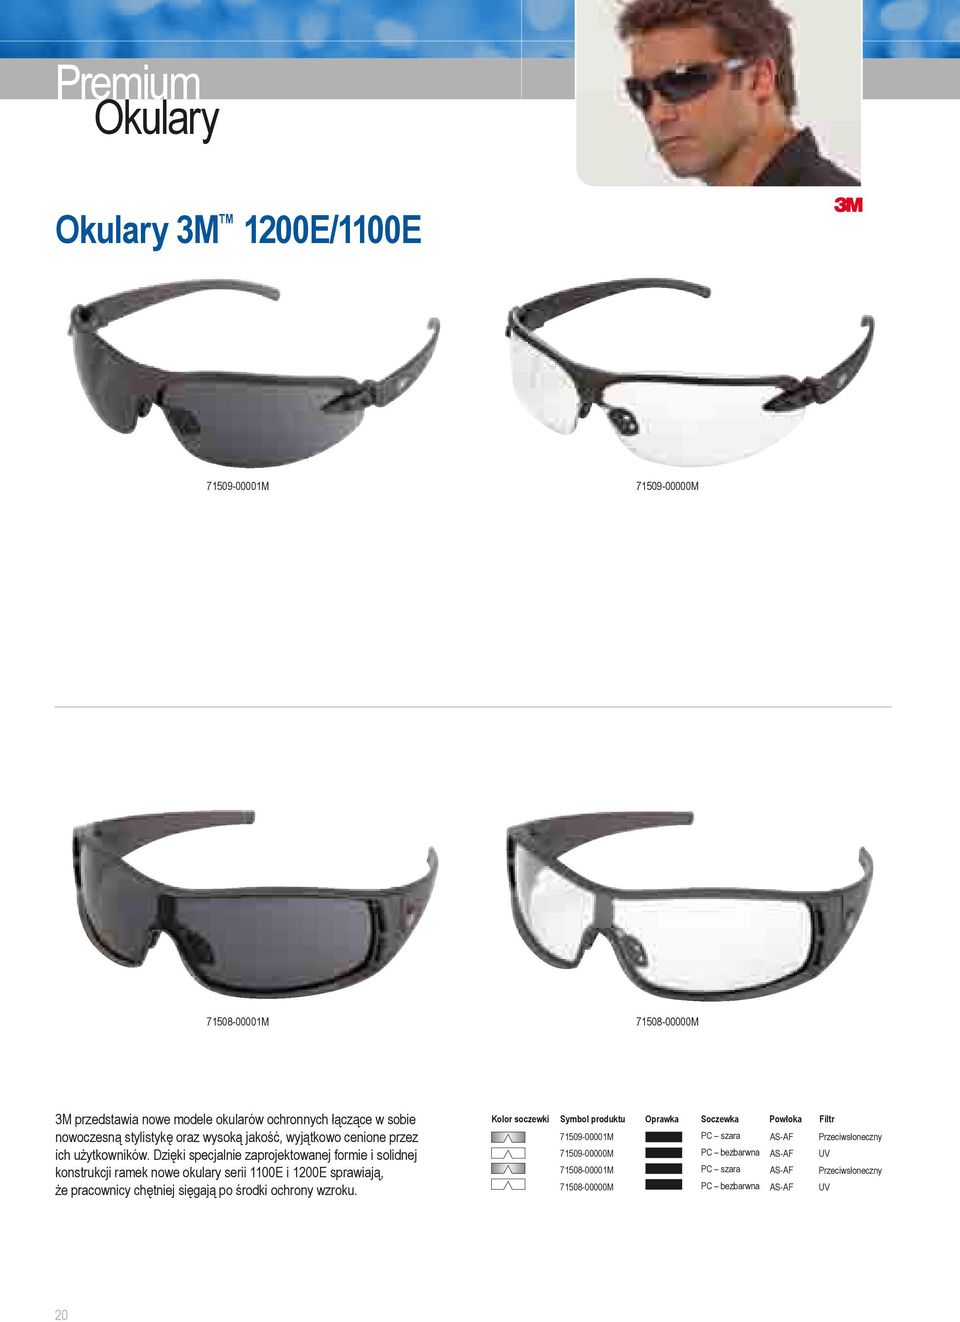 Dzięki specjalnie zaprojektowanej formie i solidnej konstrukcji ramek nowe okulary serii 1100E i 1200E sprawiają, że